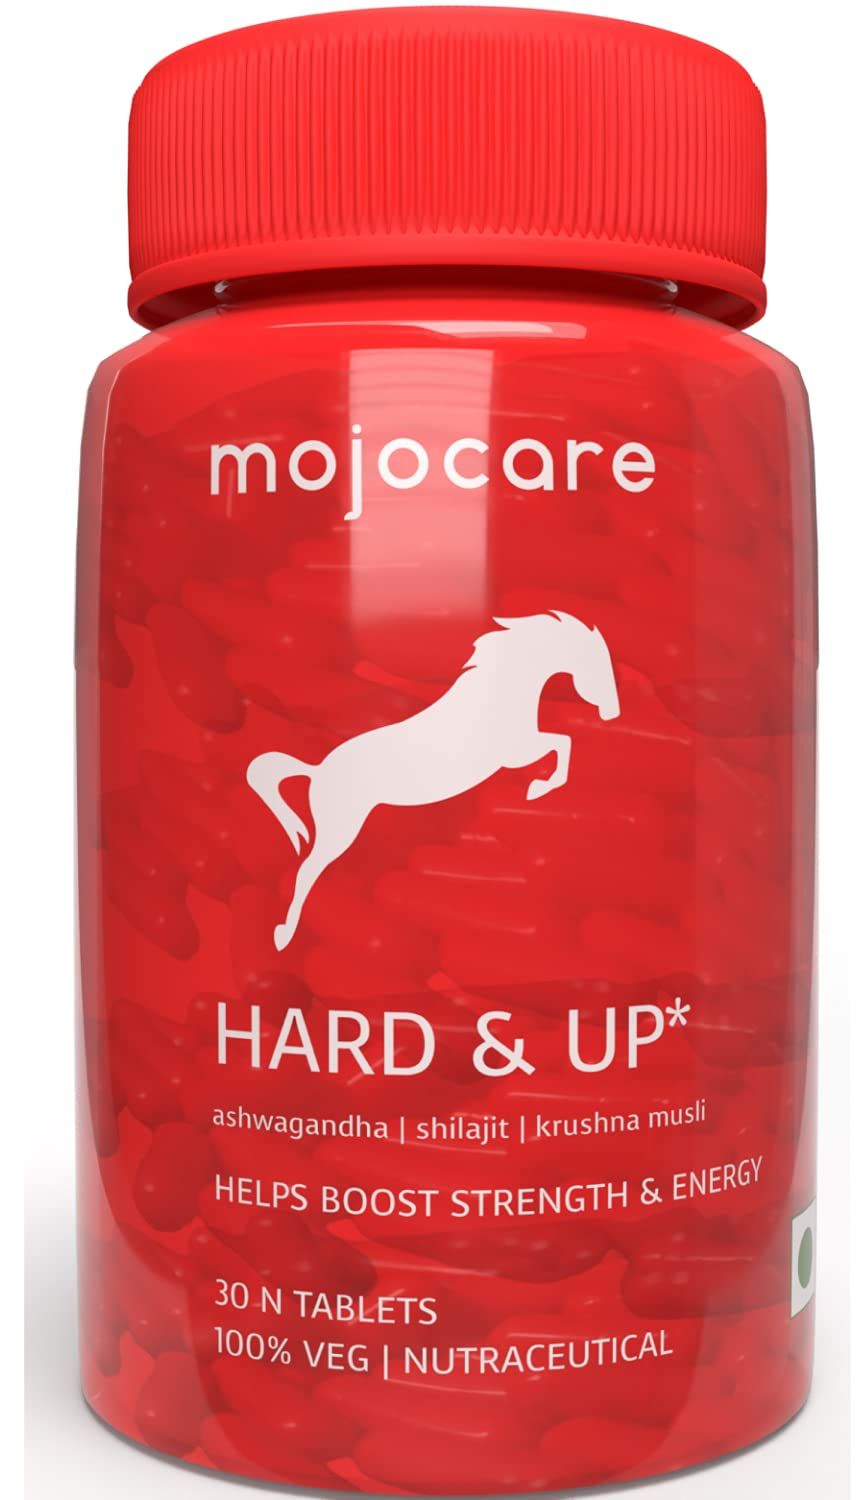 Mojocare Hard & Up Image